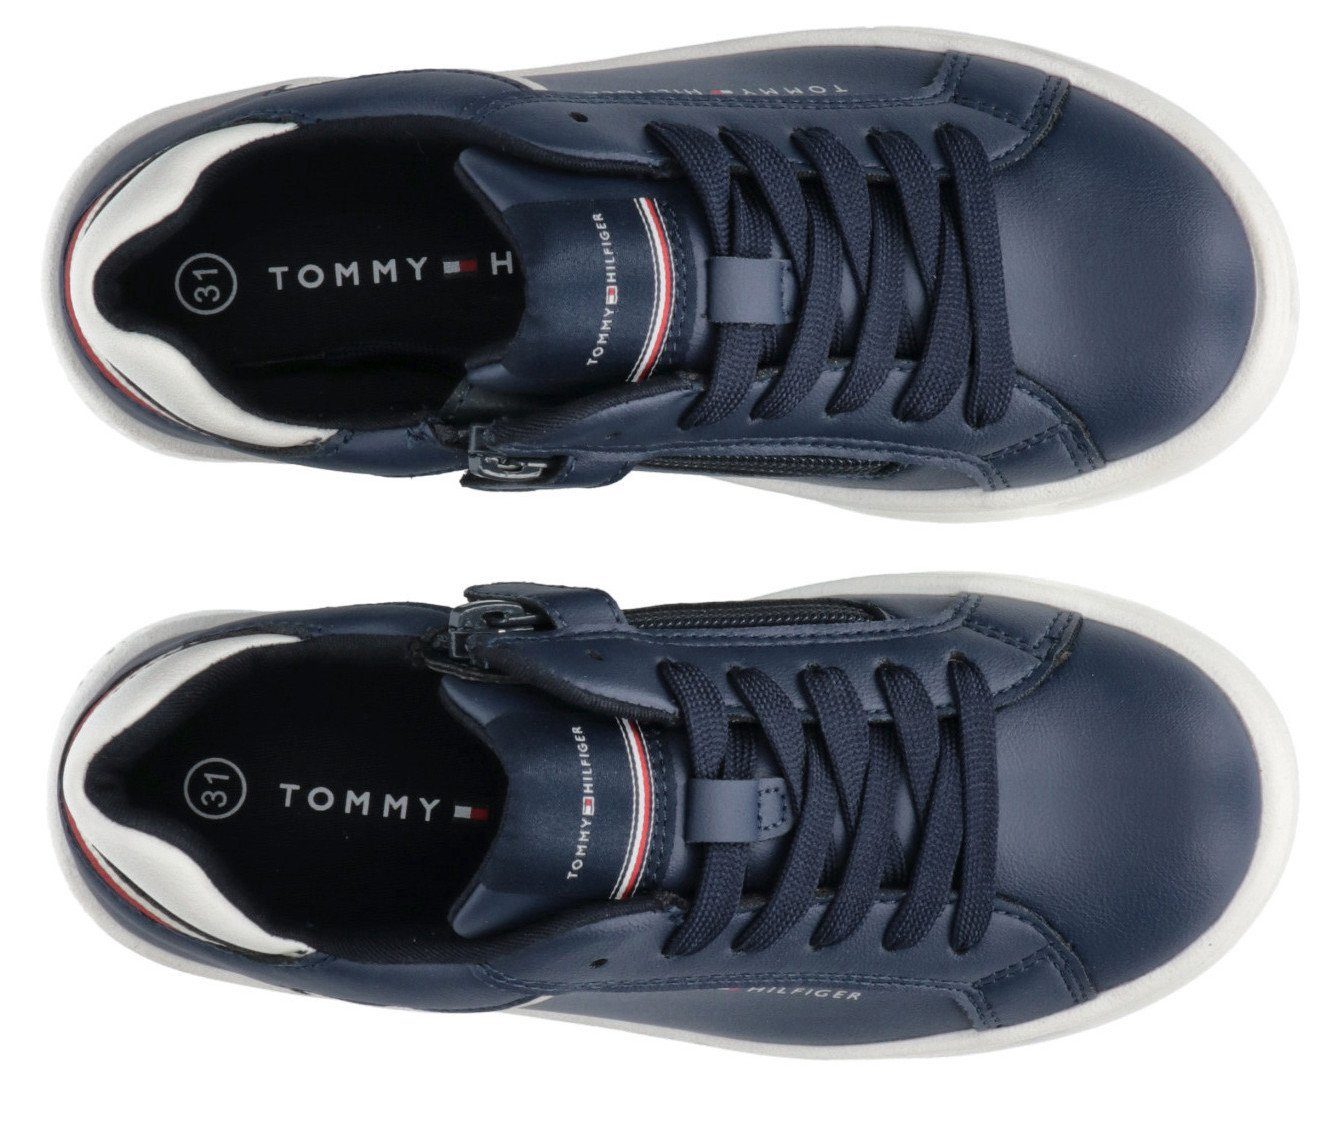 CUT Hilfiger im Sneaker Look Retro LOW LACE-UP Tommy SNEAKER BLUE